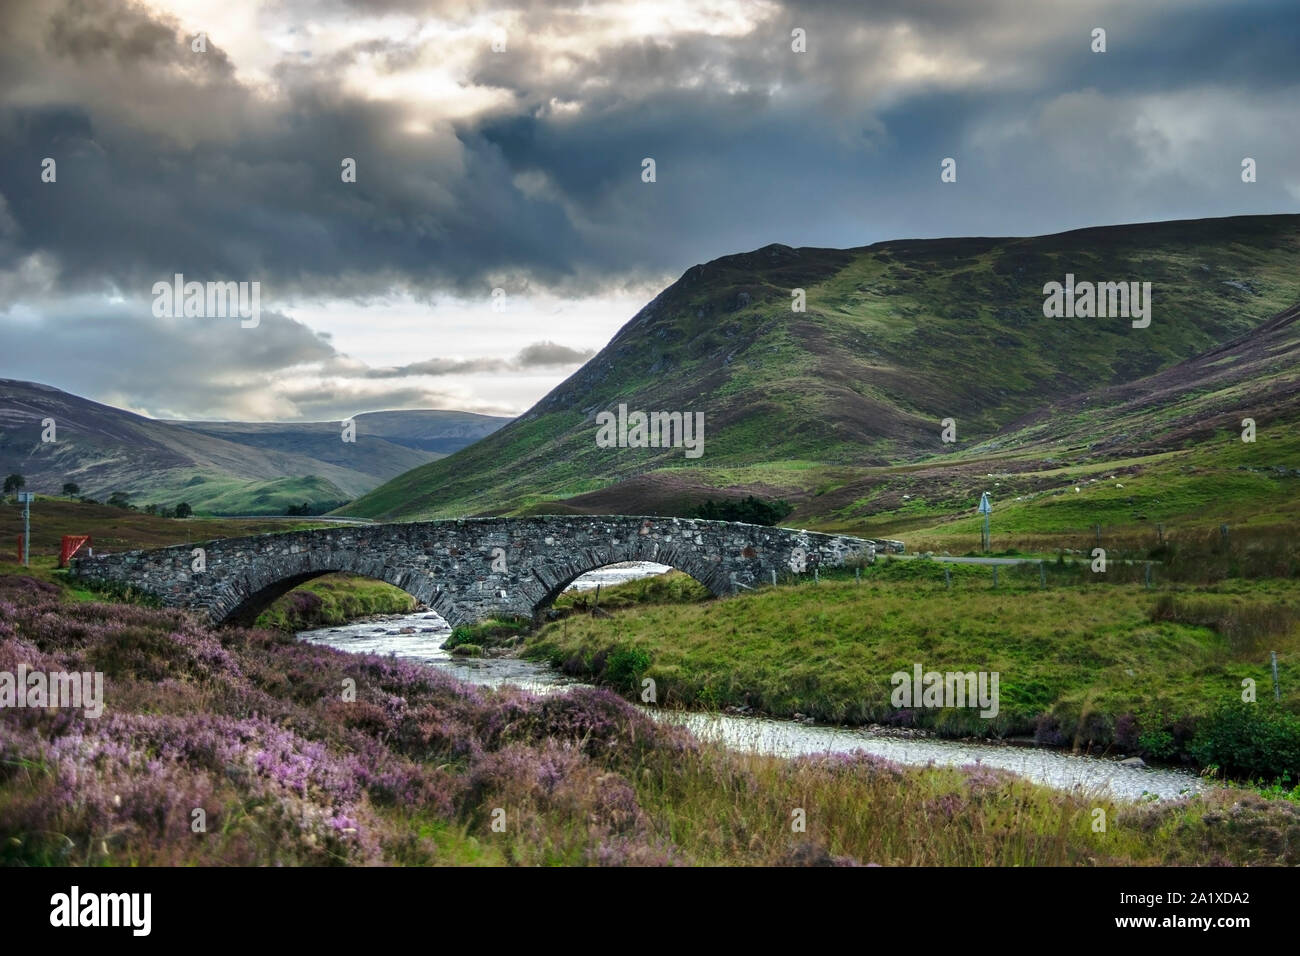 Glen Clunie et vallée du Fraser Pont sur l'eau Clunie. Royal Deeside près de Braemar et Ballater, dans l'Aberdeenshire, Ecosse, Royaume-Uni Banque D'Images